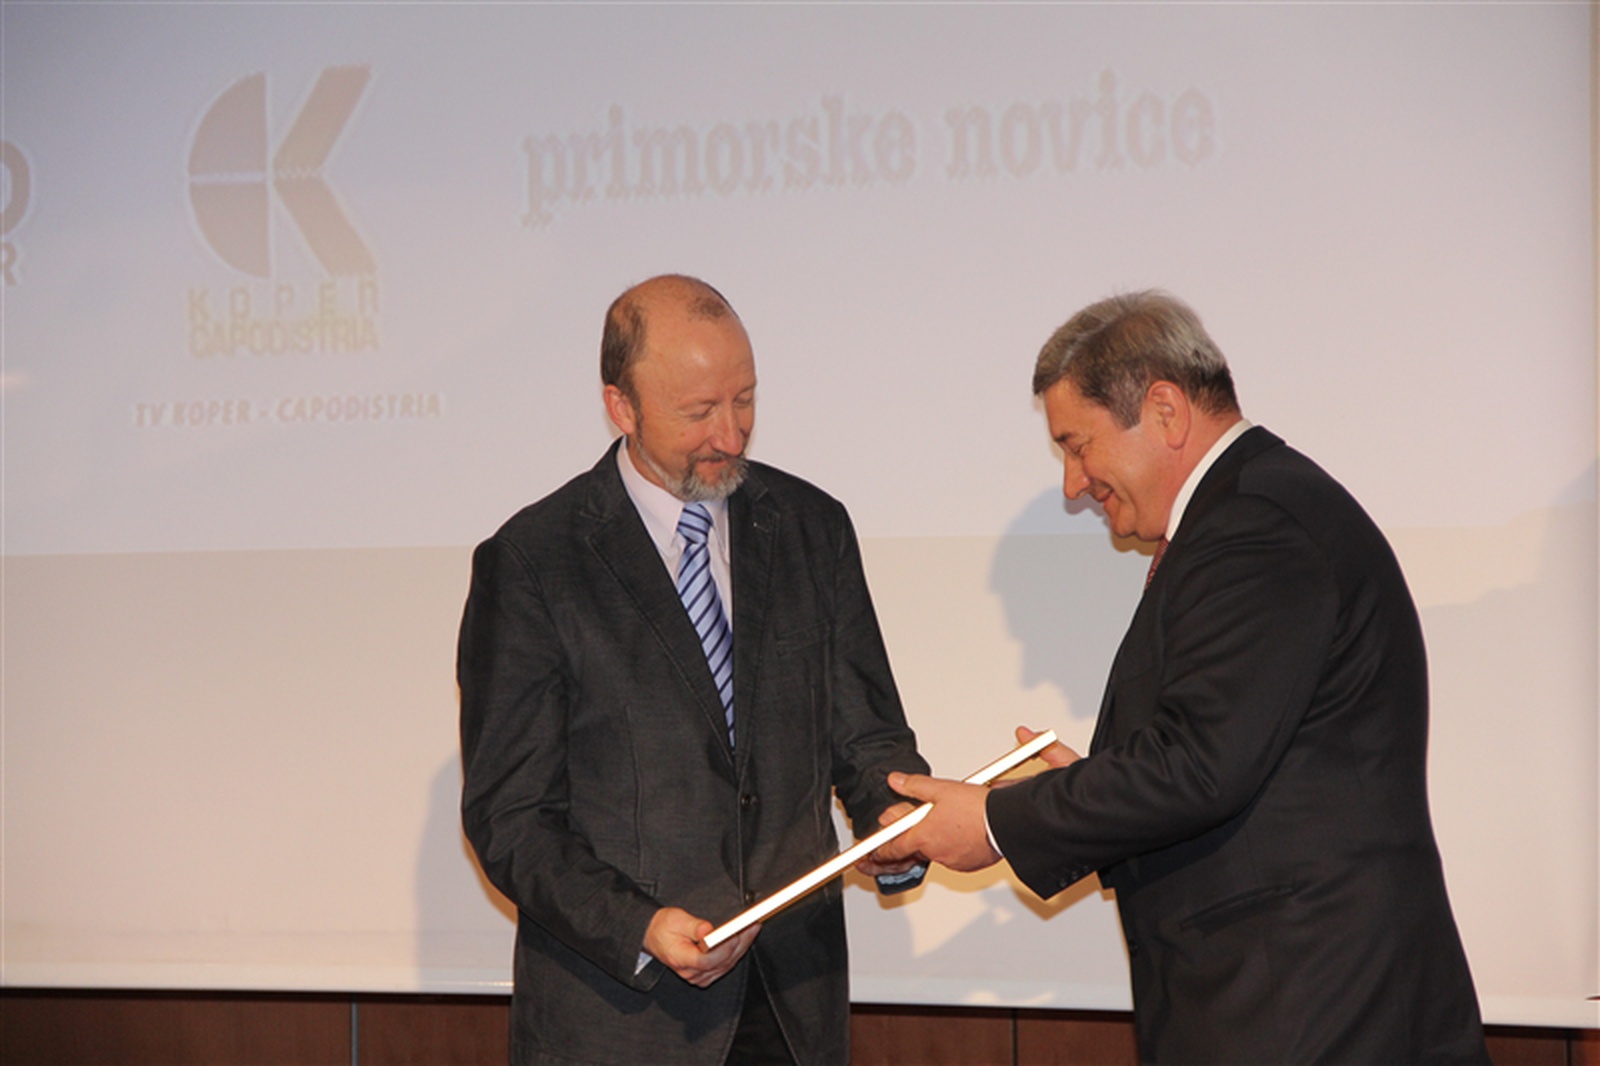 Prof. dr. Mladen Franko ob prejemu nagrade. Foto: Leo Caharija